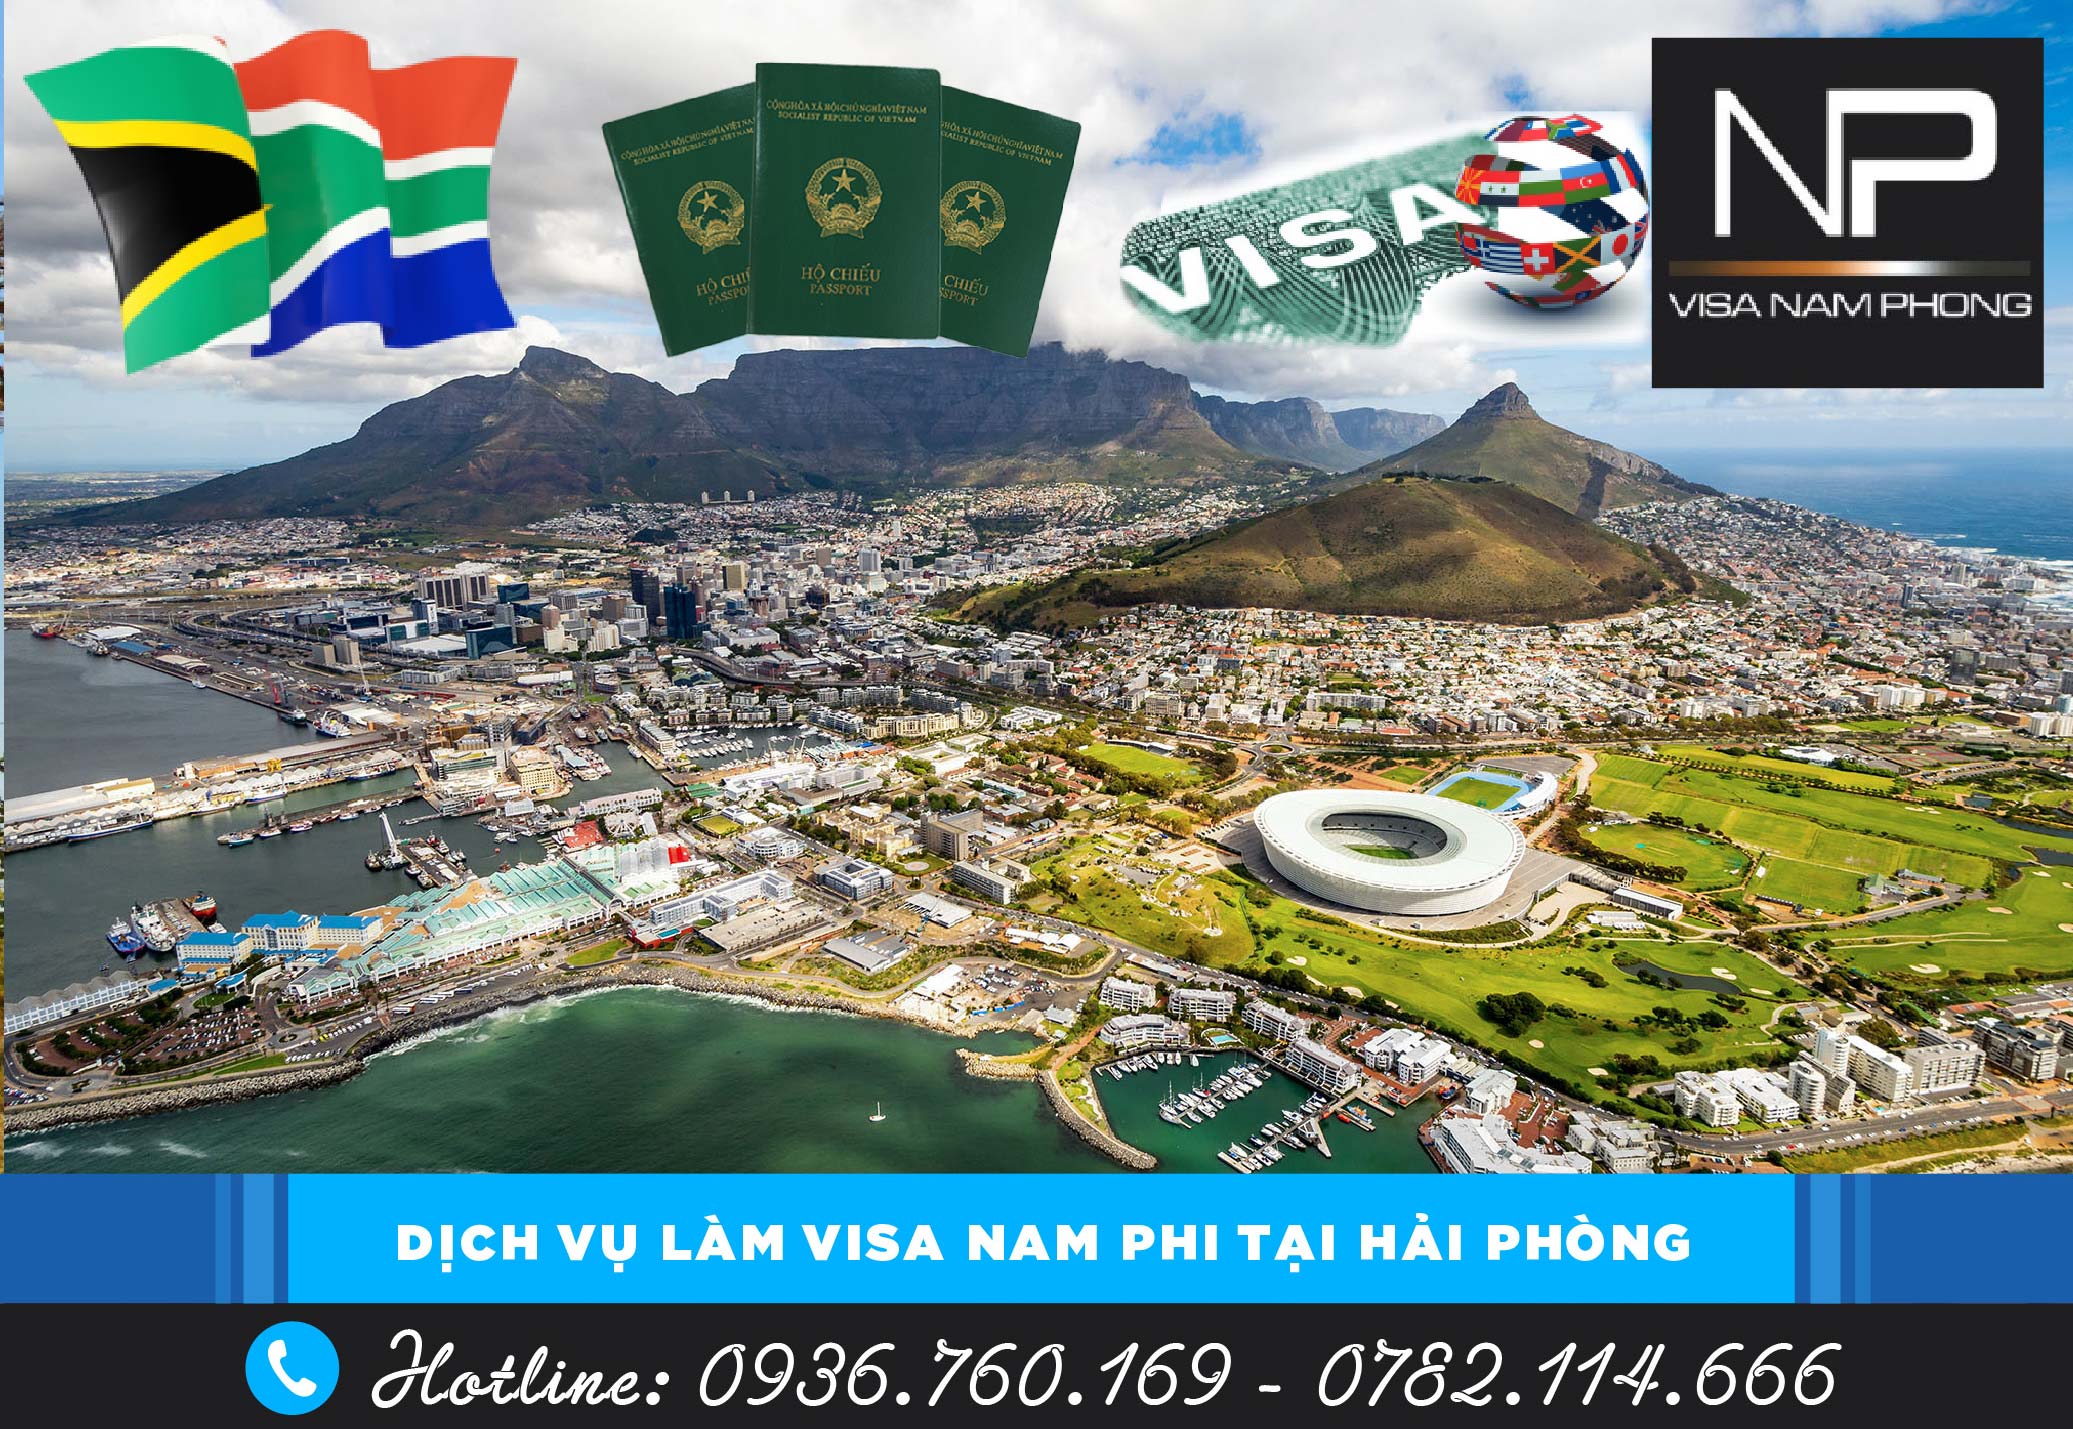 Dịch vụ làm visa Nam Phi tại Hải Phòng